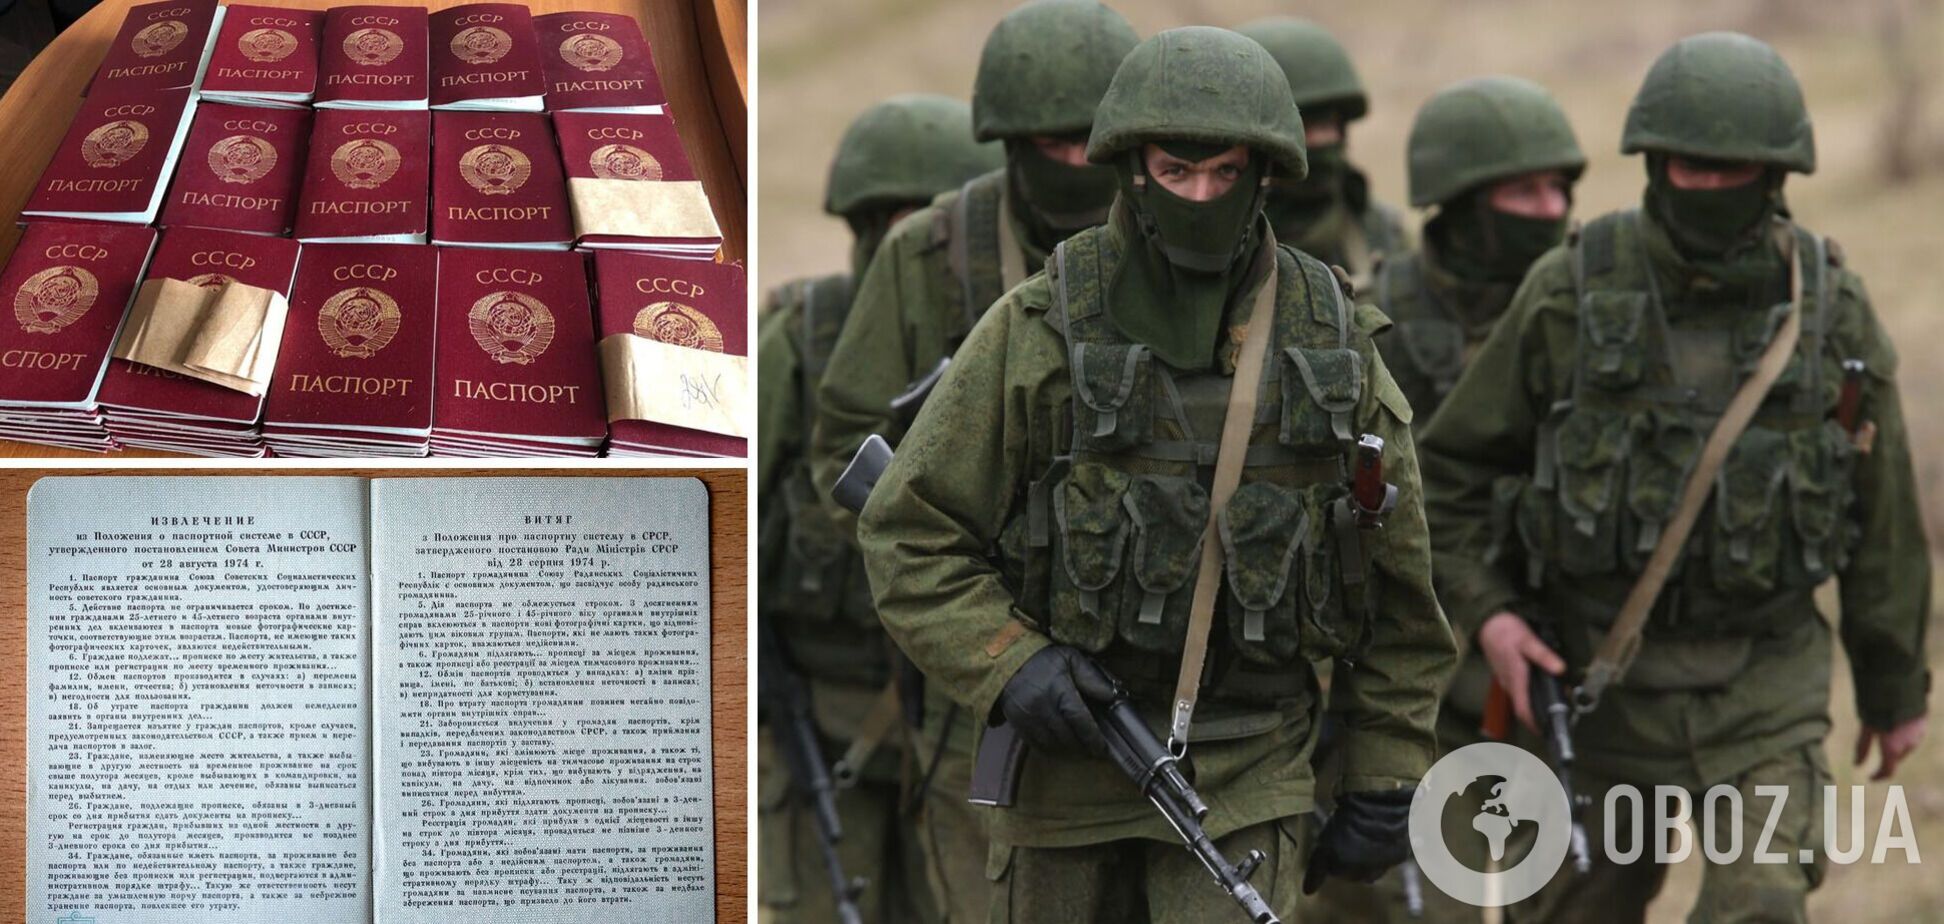 Оккупанты хотели провести 'референдум' и раздавать паспорта СССР